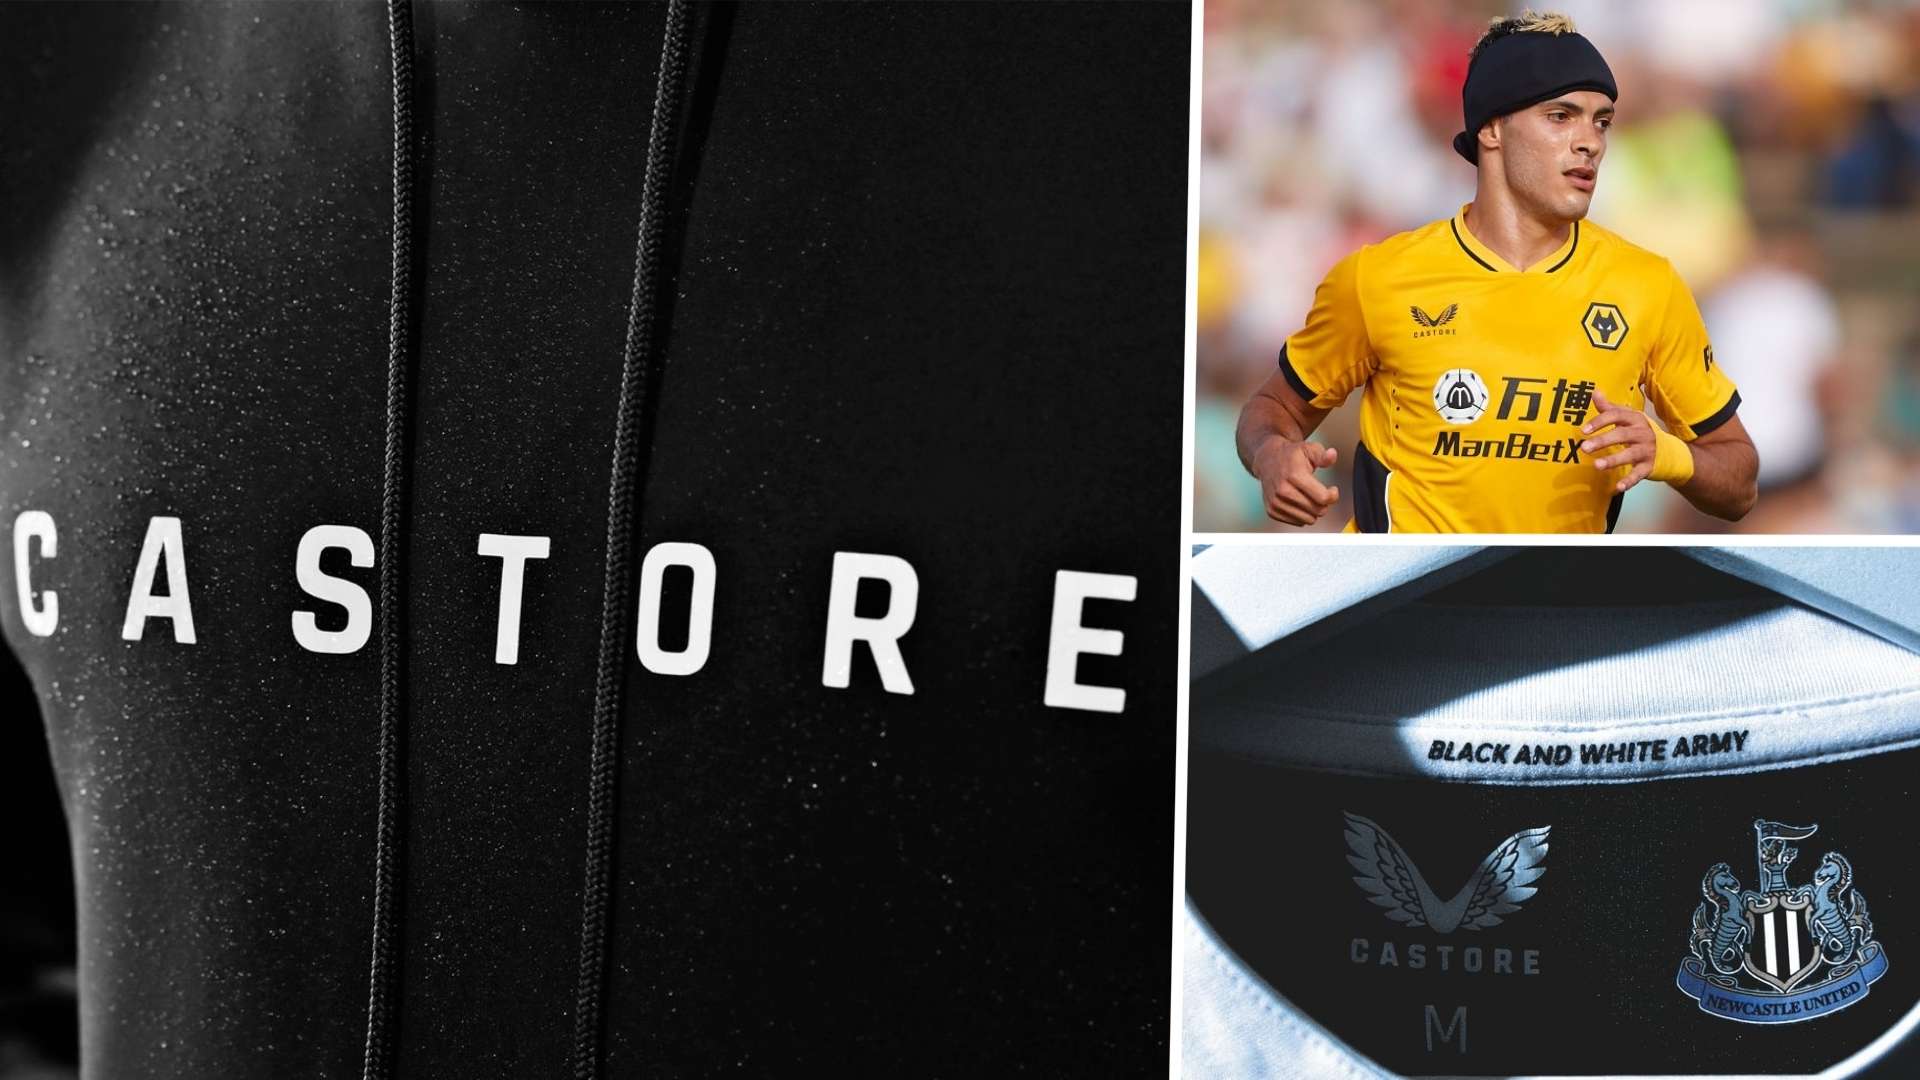 castore, la nueva marca de ropa deportiva en futbol